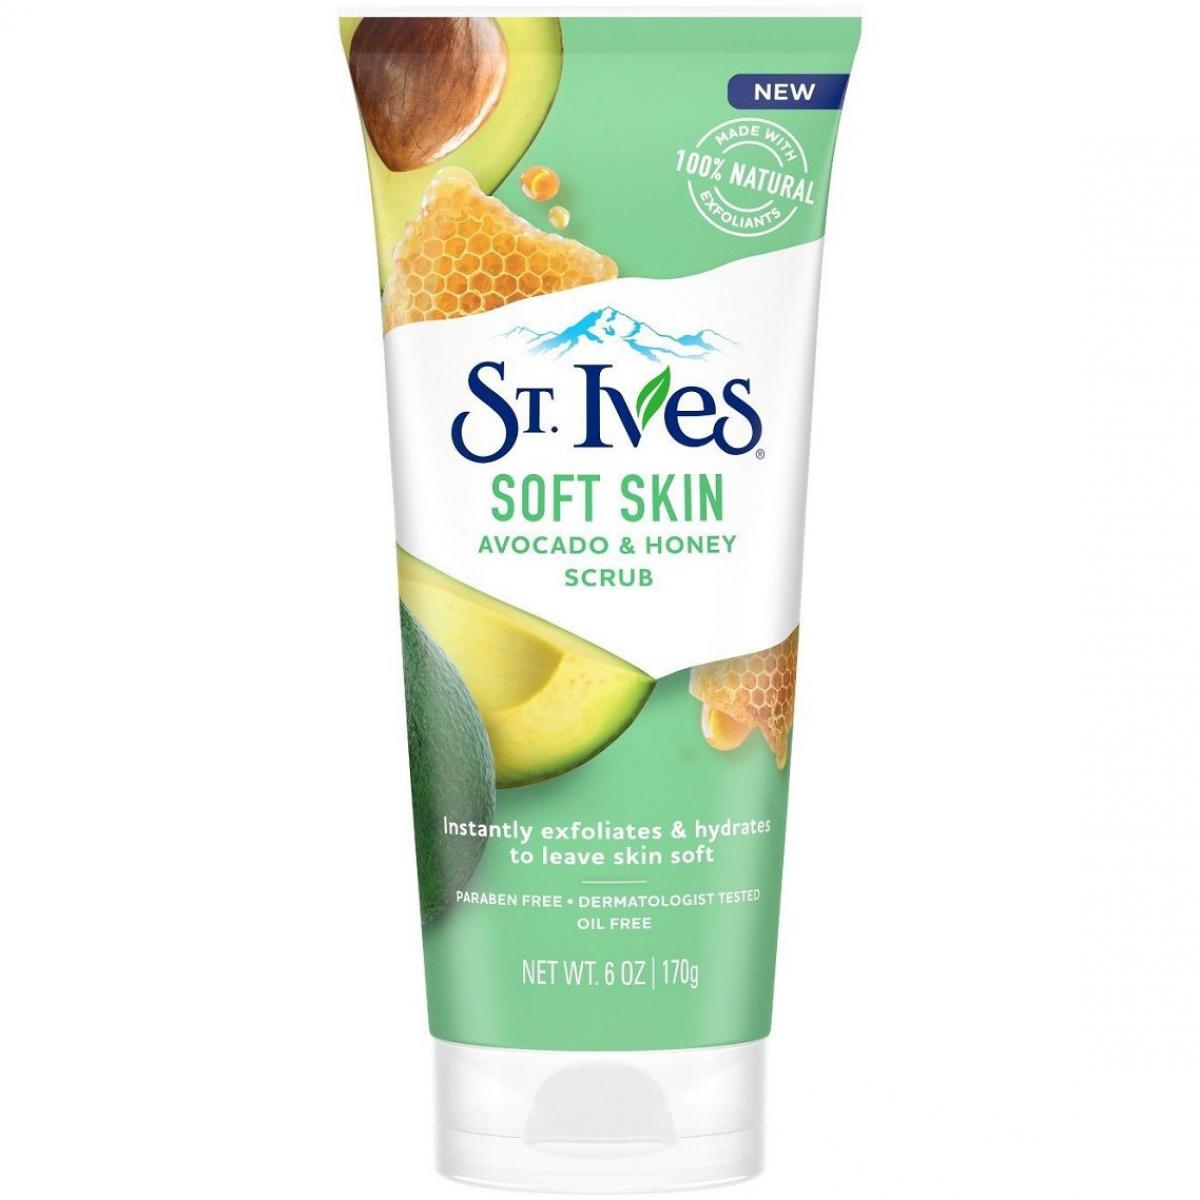 اسکراب نرم کننده آووکادو و عسل -  St Ives Soft Skin Avocado and Honey Scrub